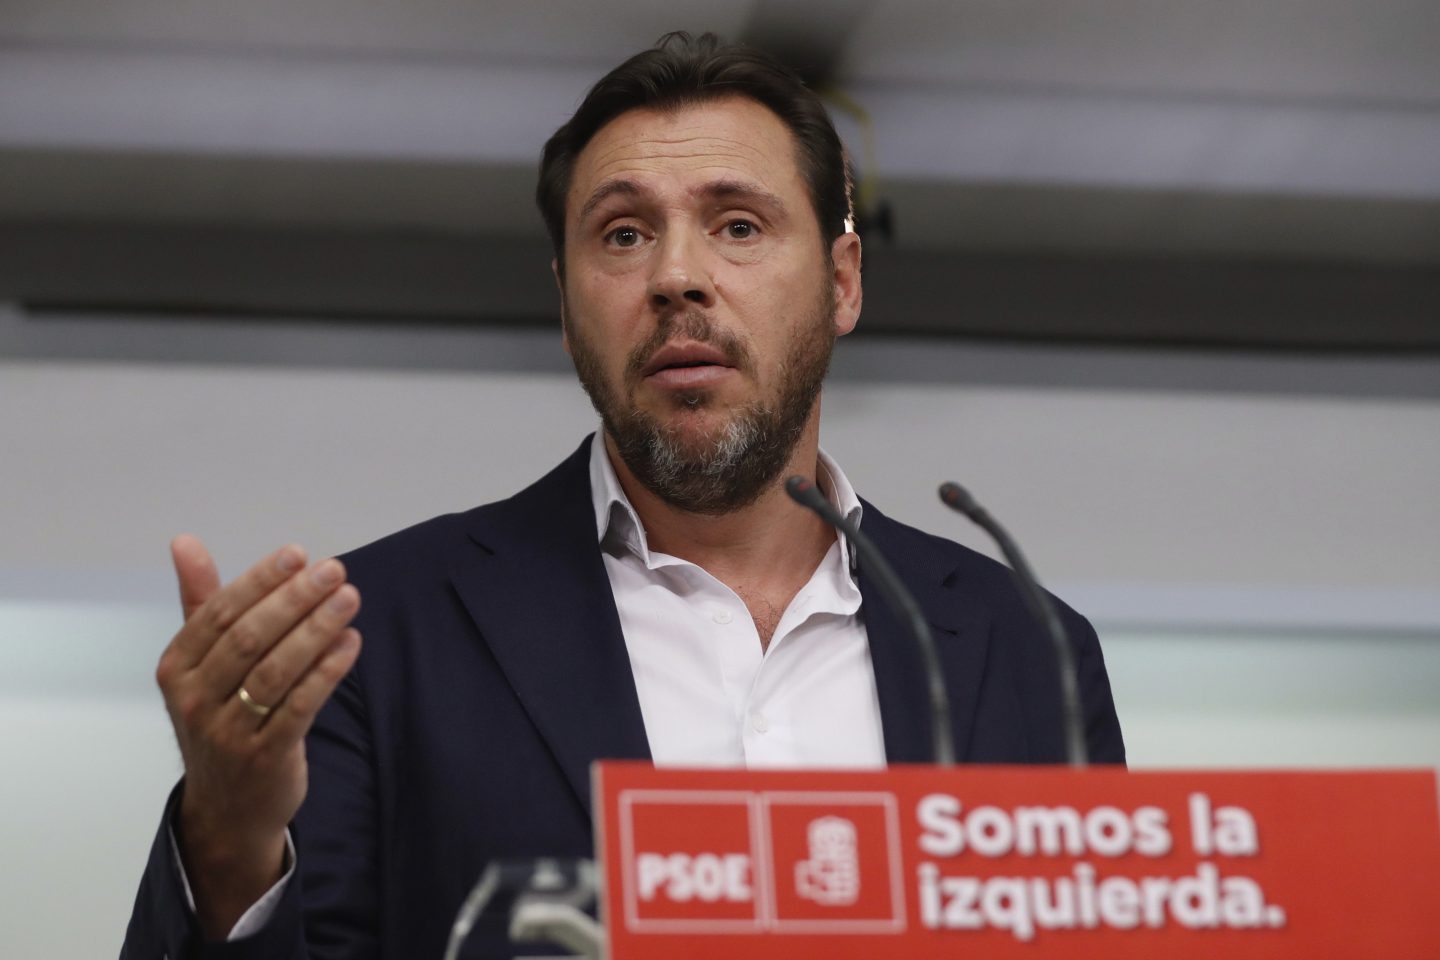 El PSOE avisa al Gobierno: "Vigilaremos que el 155 se cumpla según lo pactado"